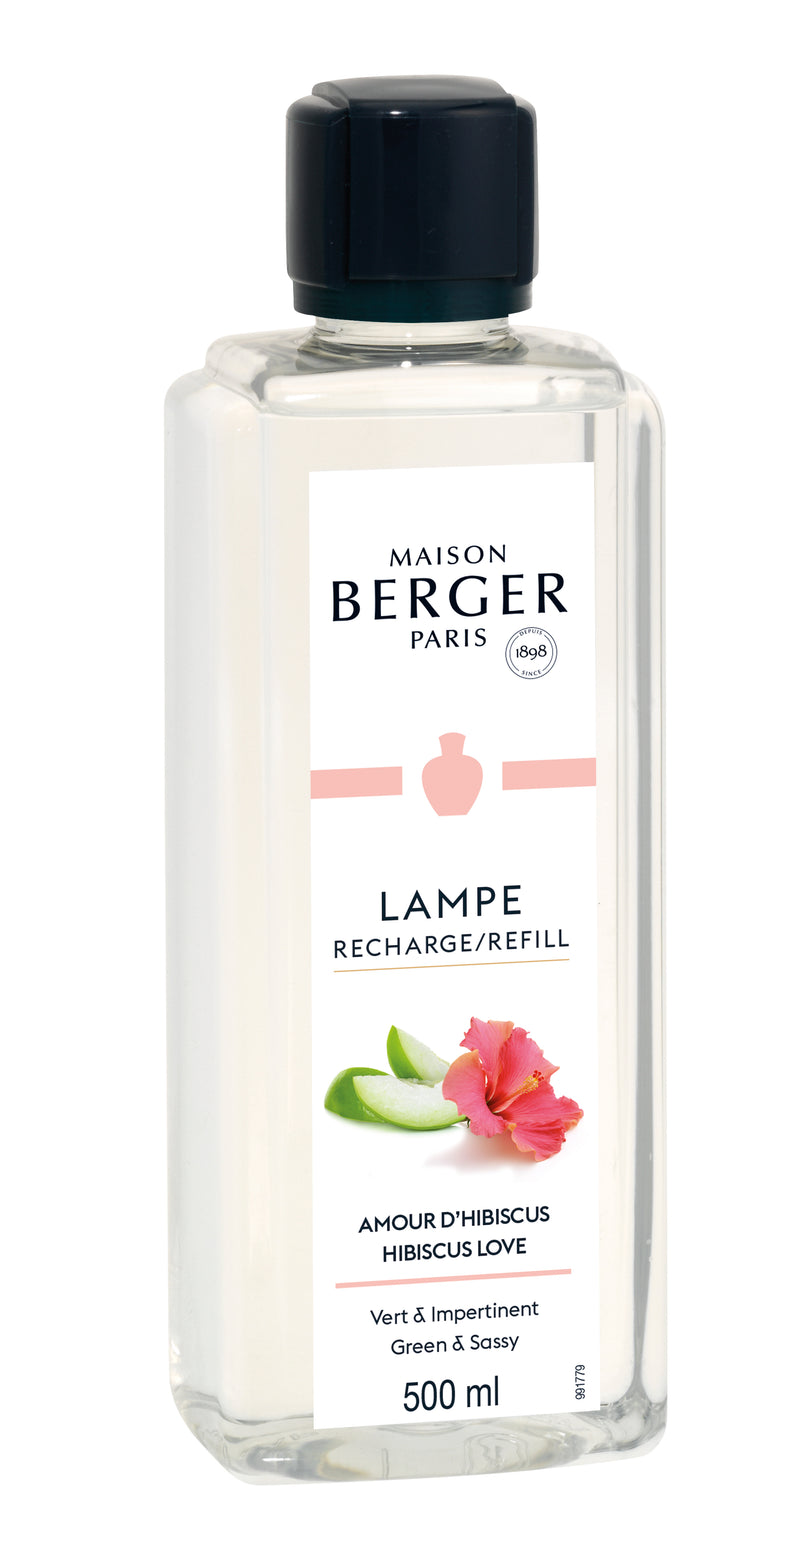 Lampe Berger huisparfum 500 ml - Hibiscus love / Amour d’Hibiscus